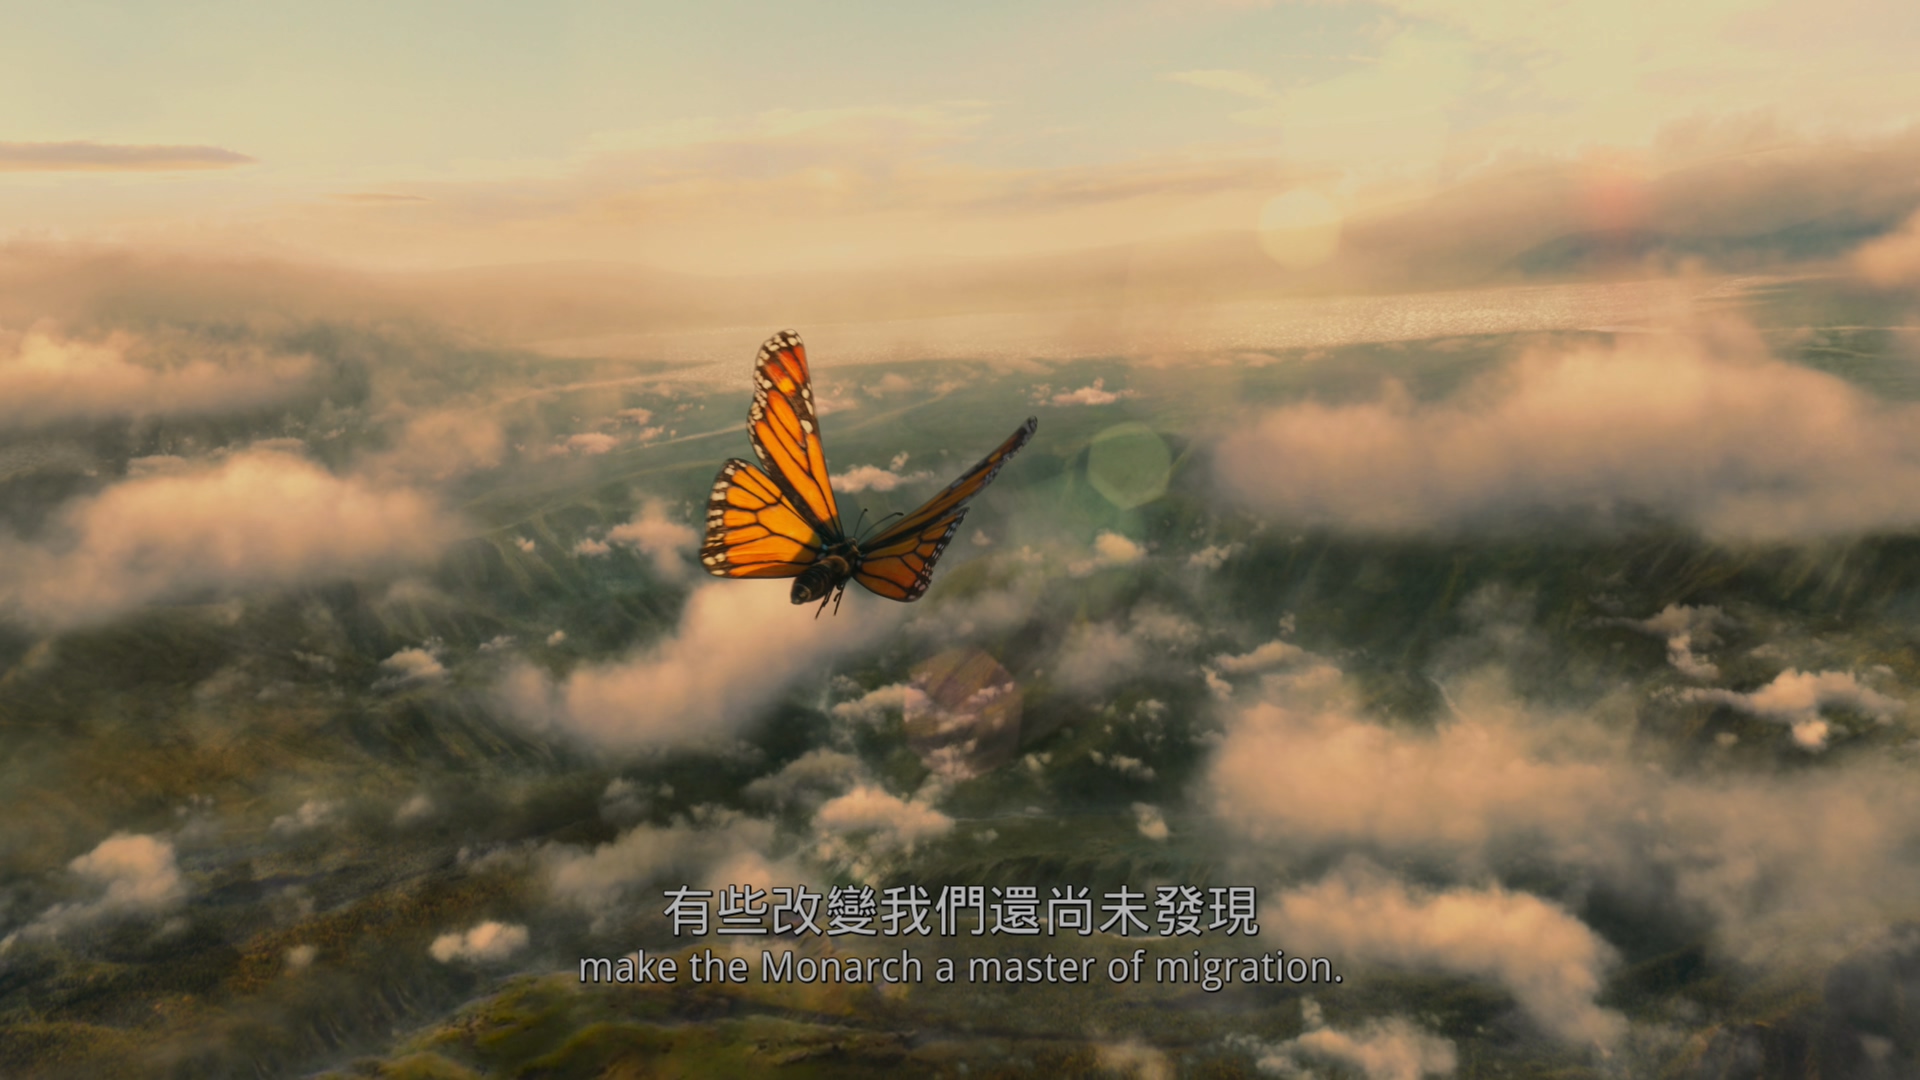 帝王蝶的迁徙[DIY简繁/简繁双语字幕] 4K UHD原盘 IMAX纪录片 Flight of the Butterflies 2012 2160p UHD Blu-ray HEVC Atmos-wezjh@OurBits     [53.13 GB]-5.jpg